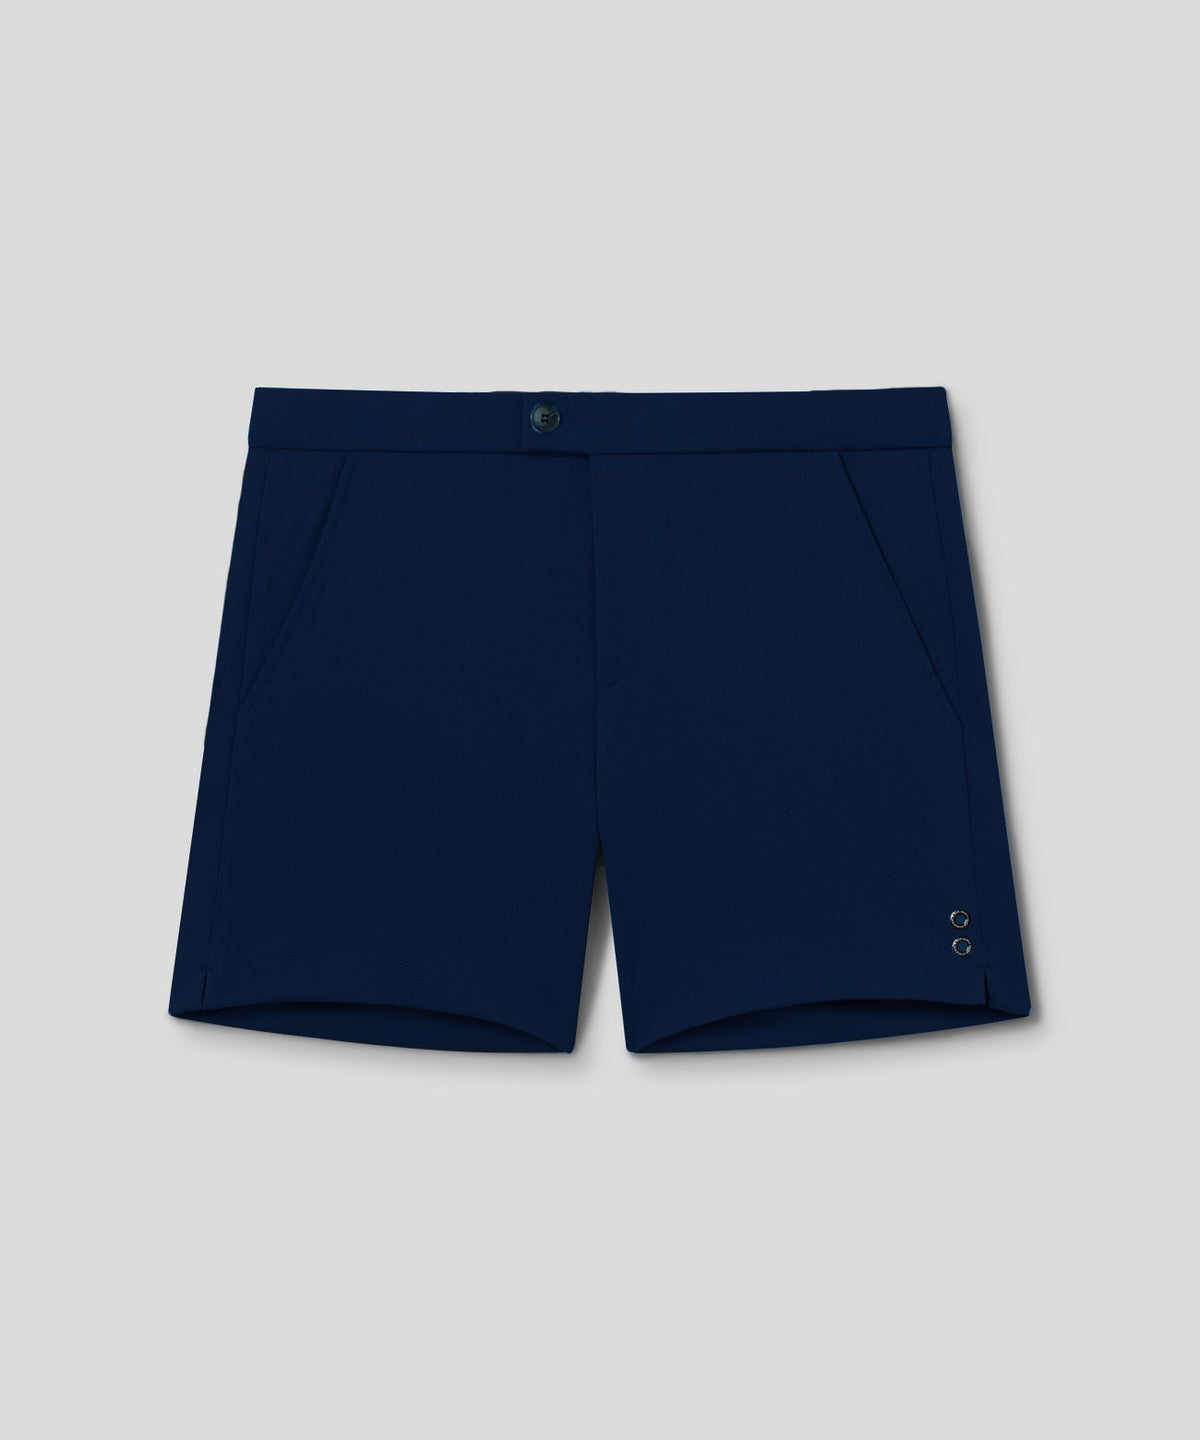 RD Tennis Shorts: Navy